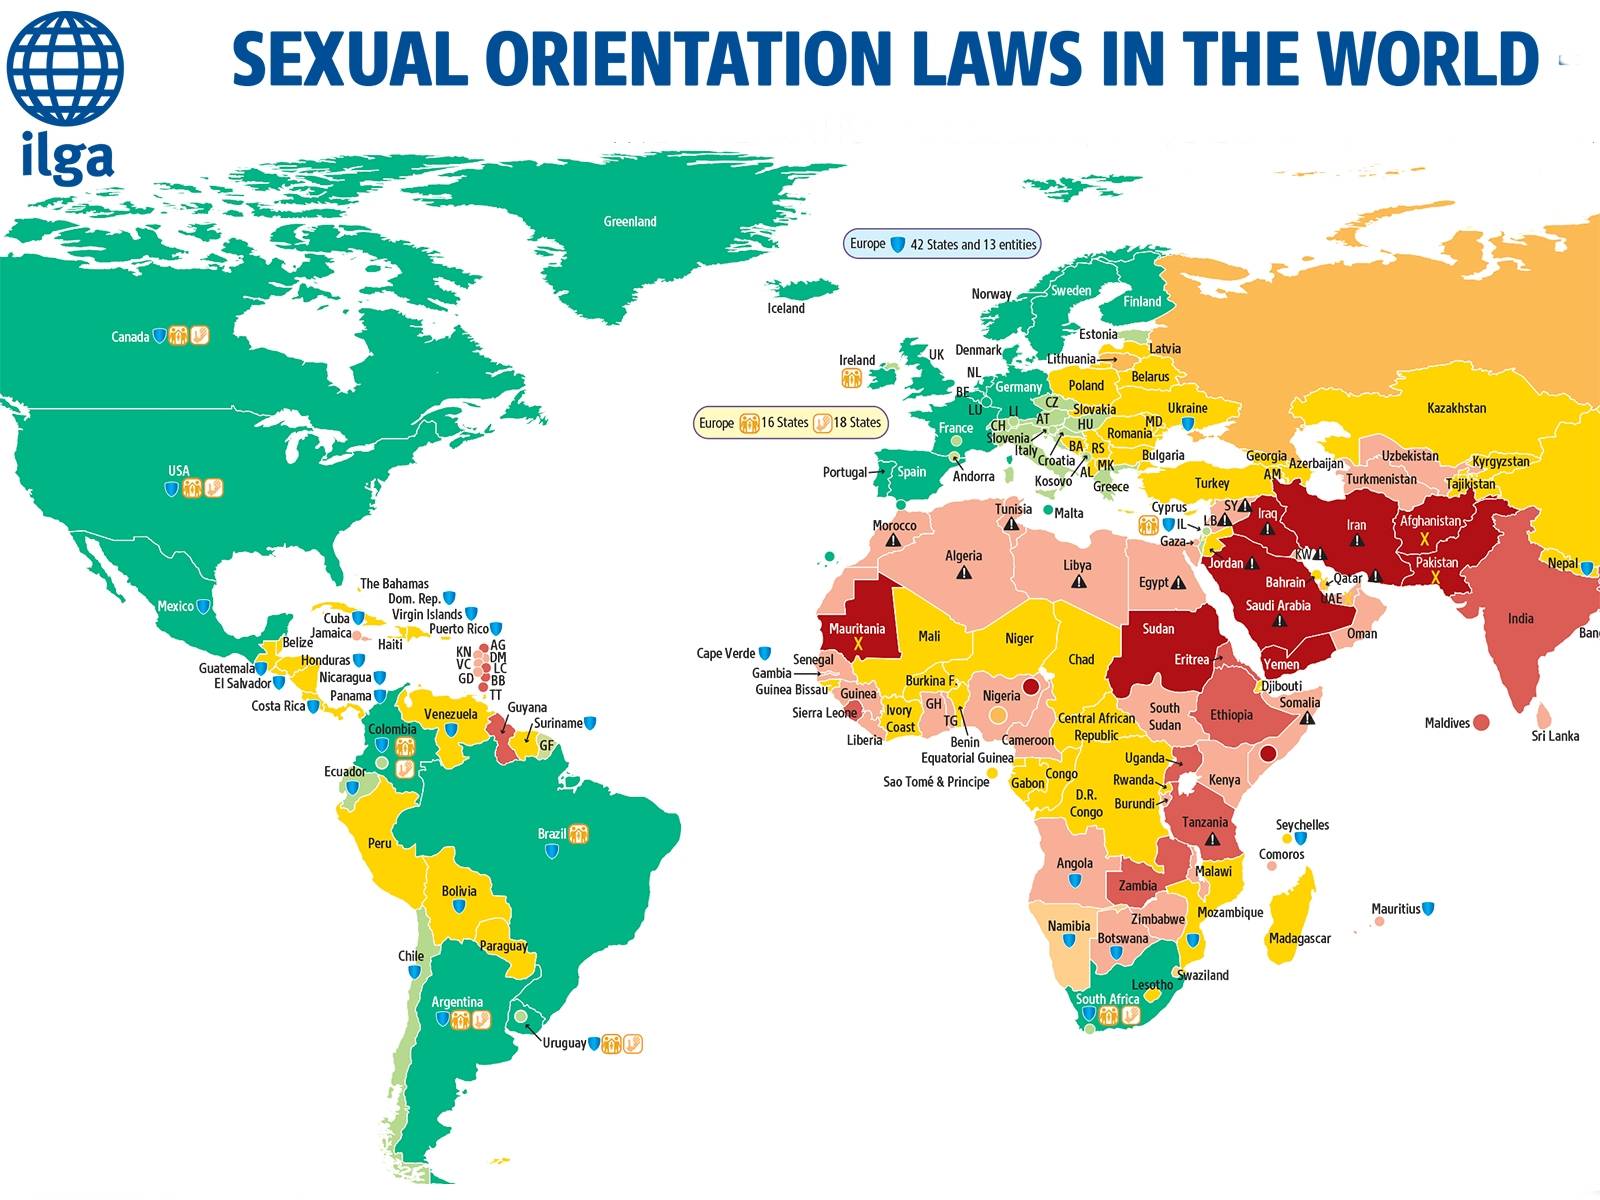 Liste des pays homophobes à travers le monde